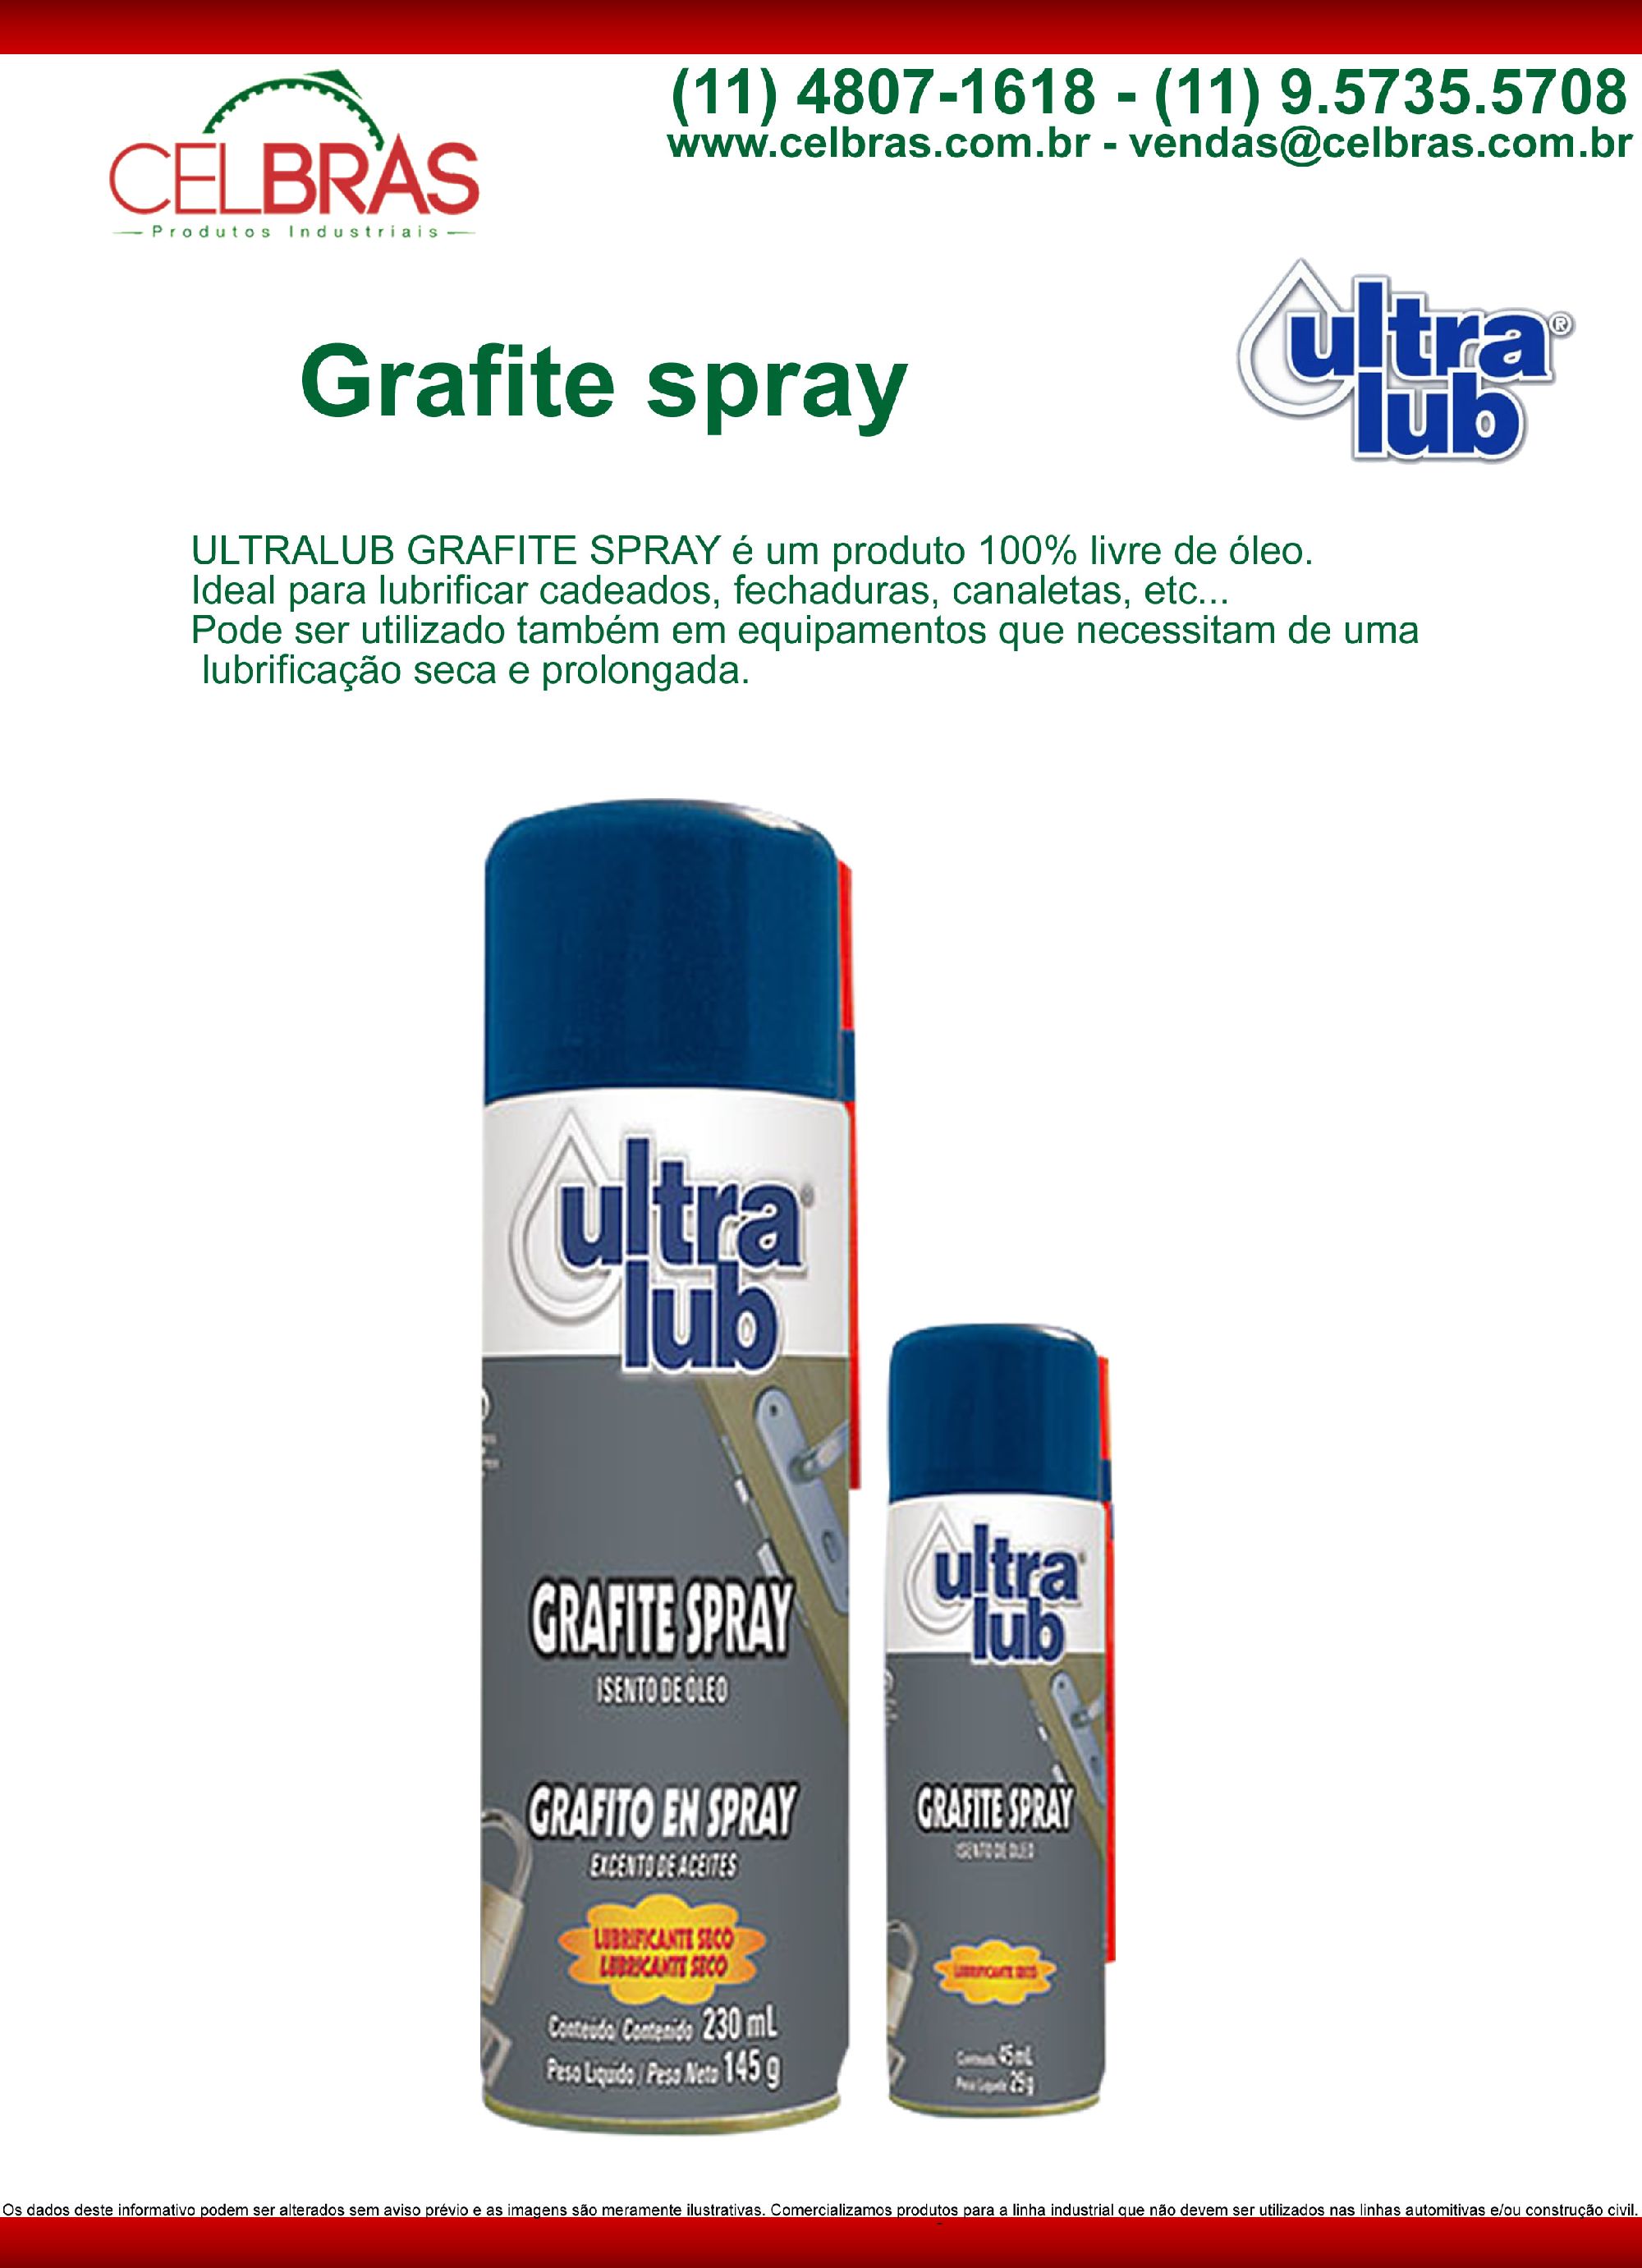 Grafite Spray